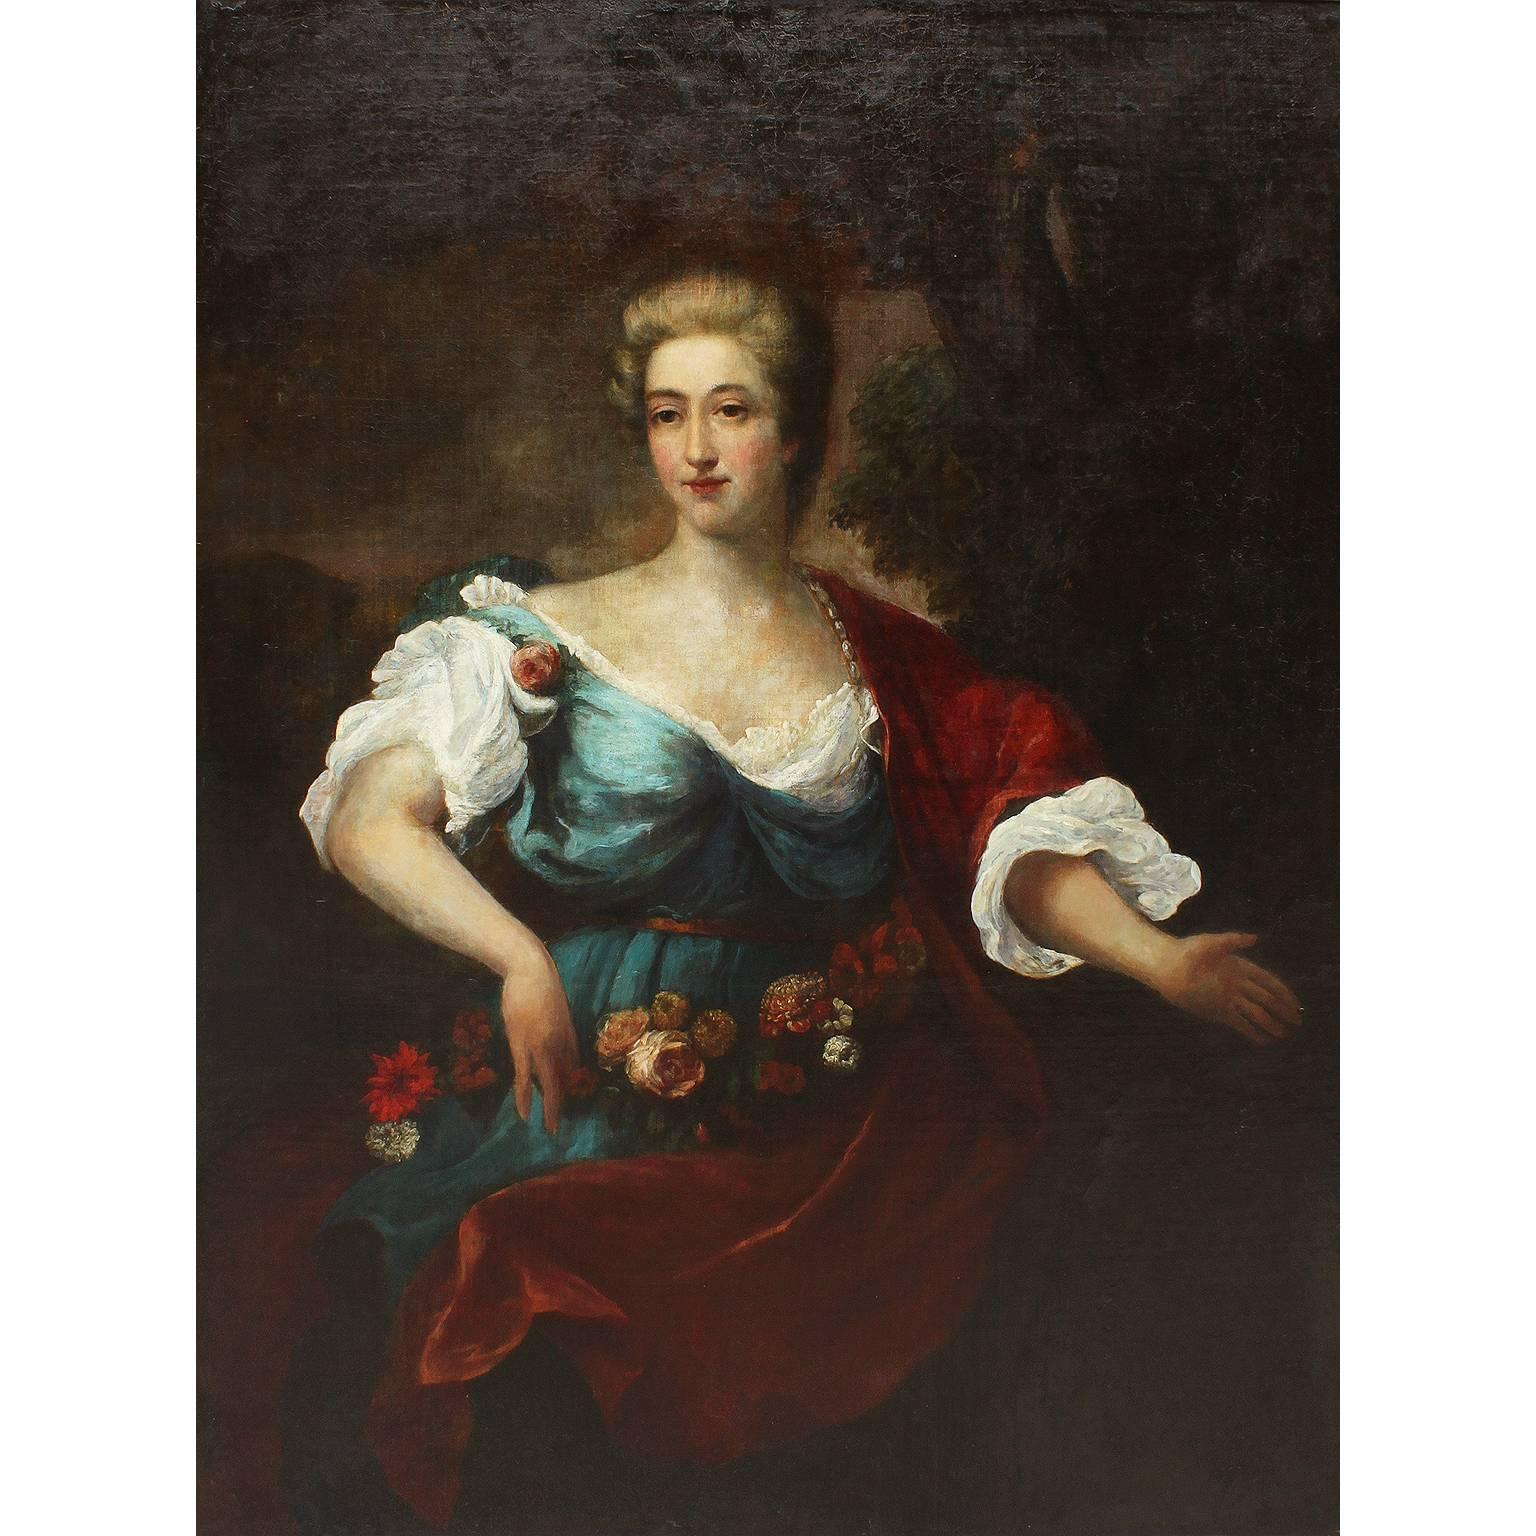 Très beau portrait à l'huile sur toile d'une dame posant avec des fleurs, d'après Jean-Marc Nattier (1685-1766), dans un cadre orné en bois sculpté et doré, vers 1800.

Dimensions : Hauteur de l'huile 51 3/8 pouces (130,5 cm)
Largeur de l'huile